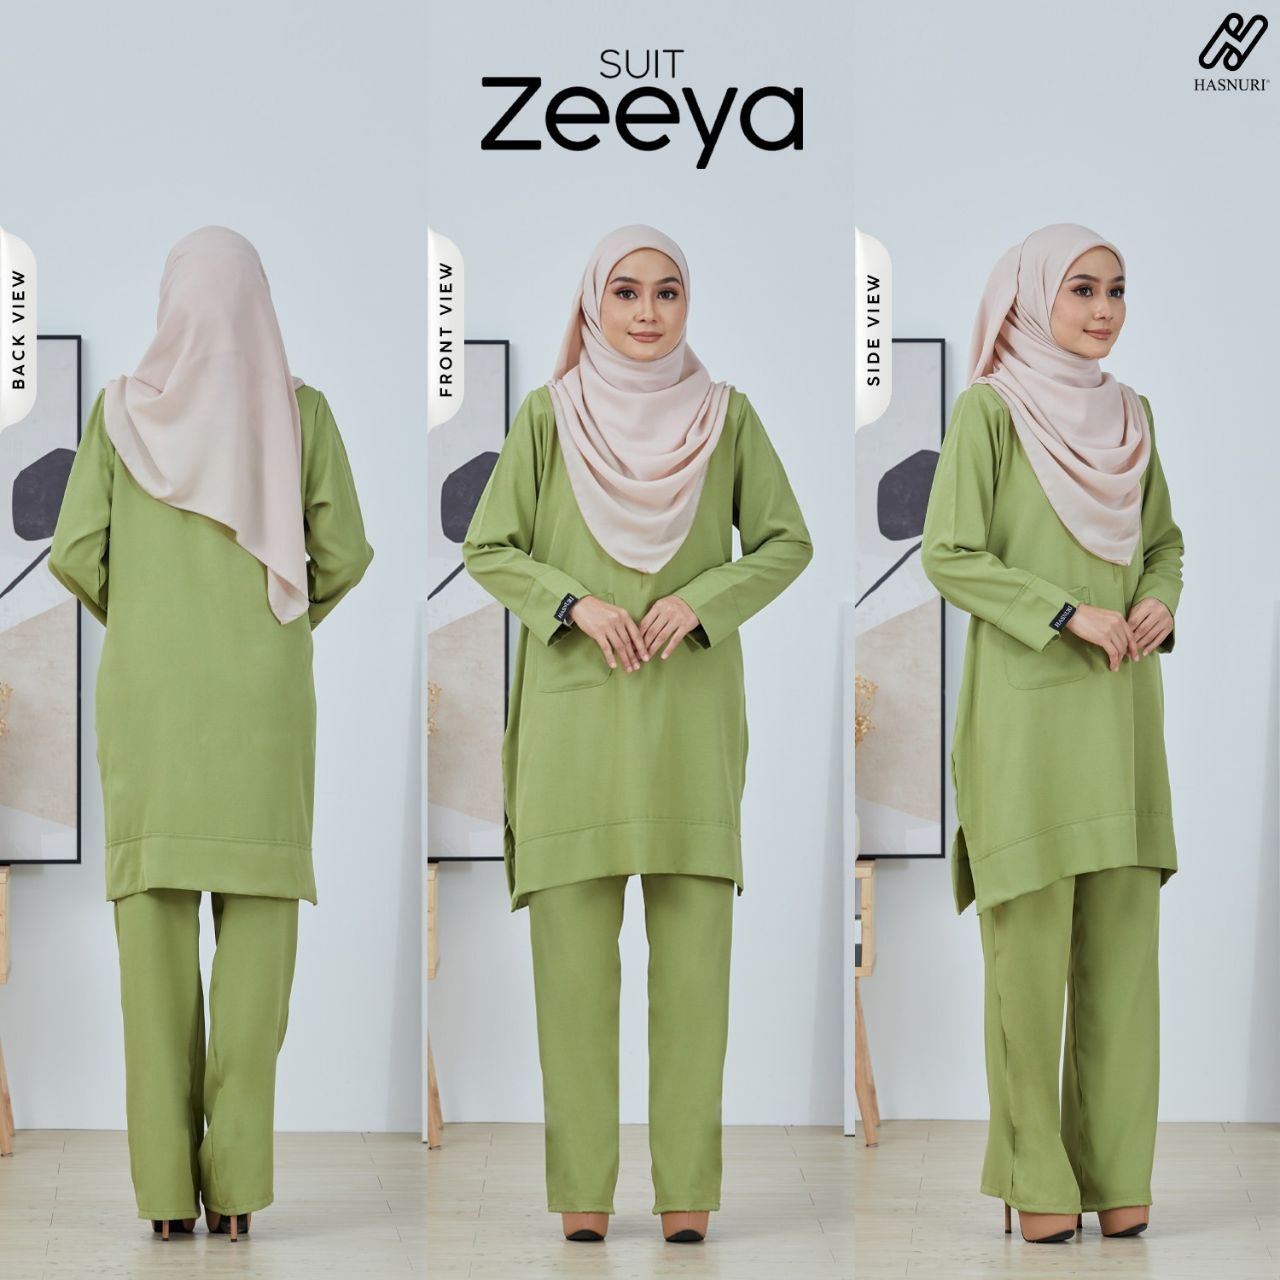 Suit Zeeya - Fuschia Pink